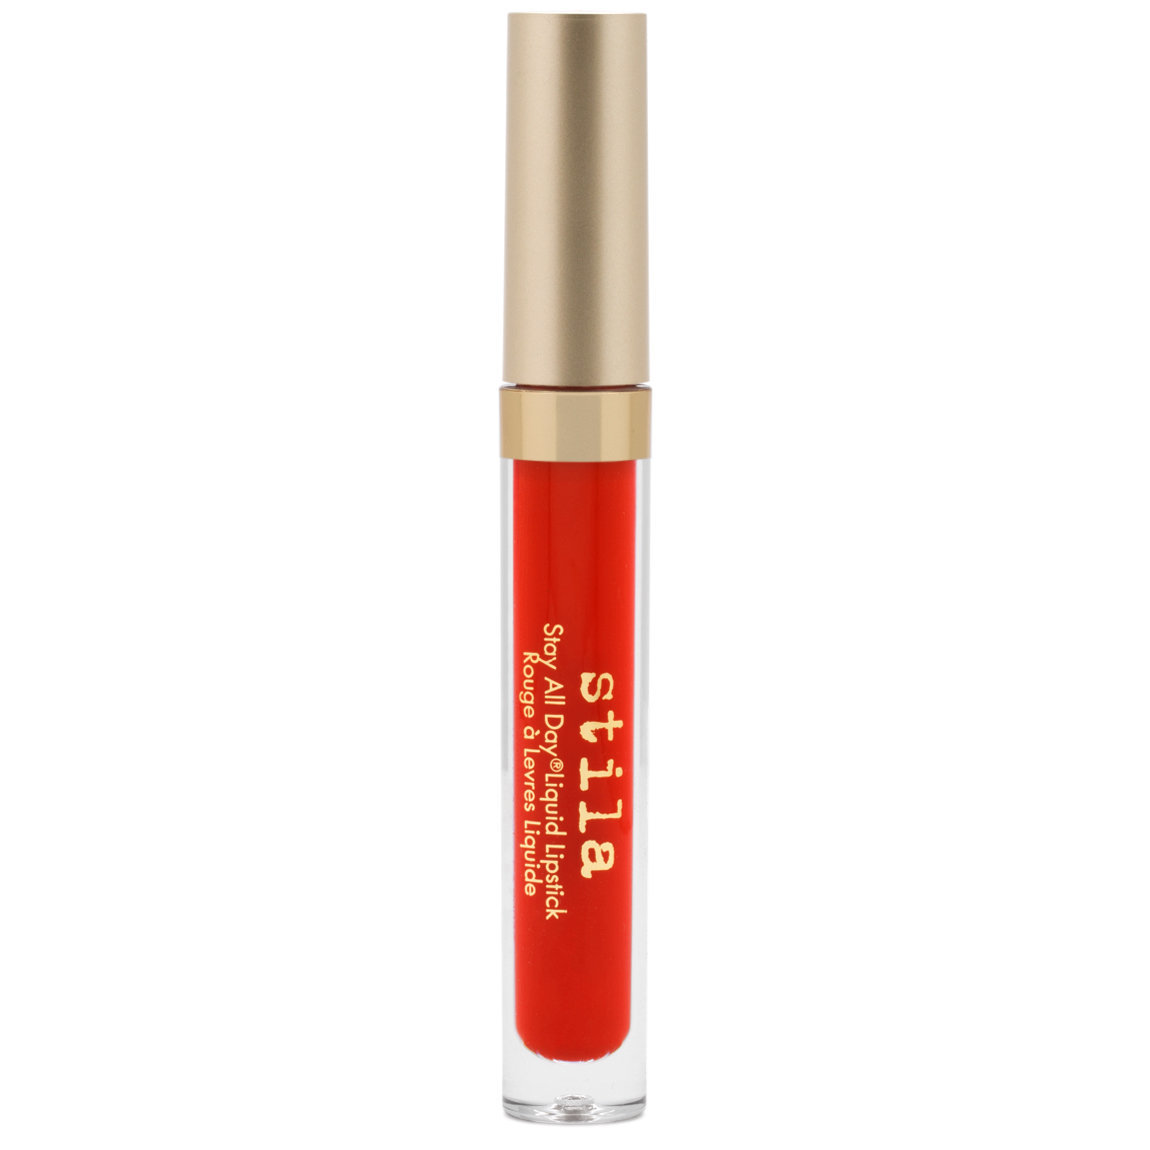 Stila Stay All Day Liquid Lipstick in Beso, $24